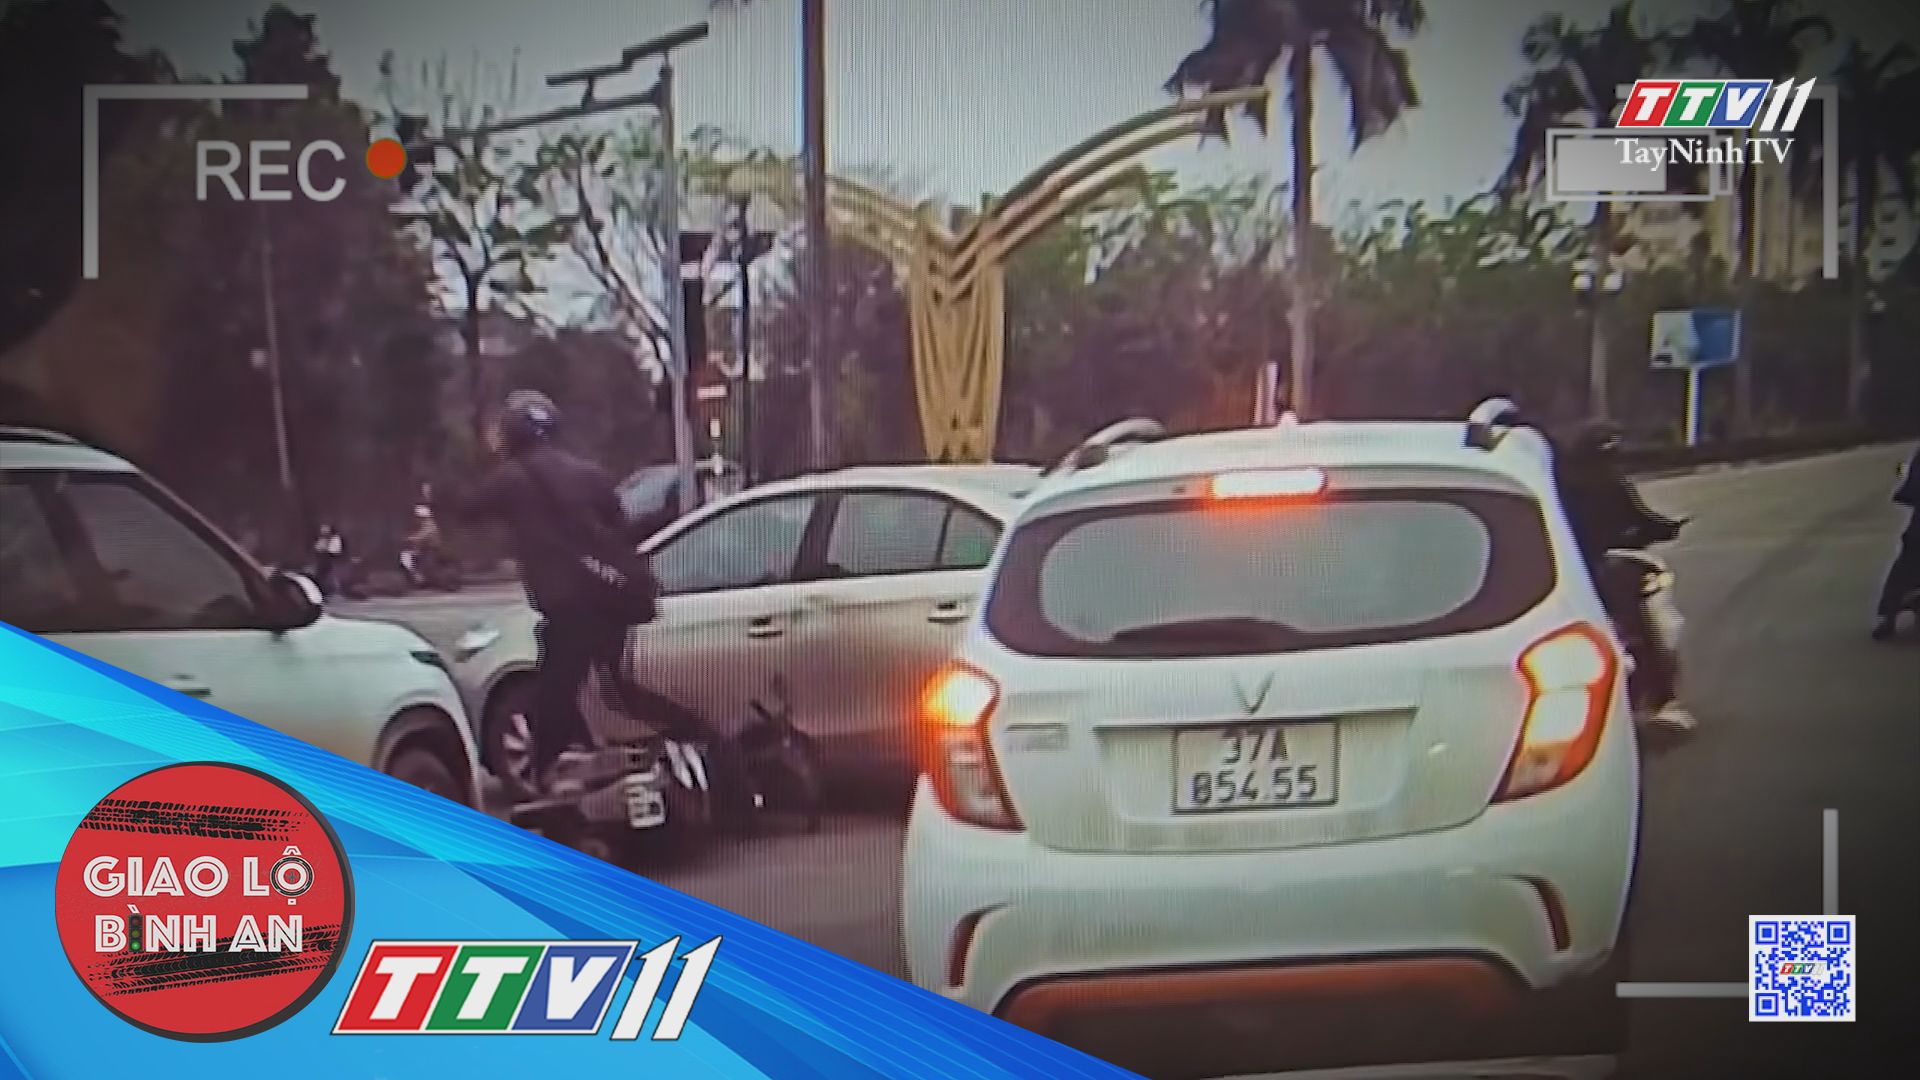 Ứng xử có văn hóa khi va chạm giao thông | Giao lộ bình an | TayNinhTV